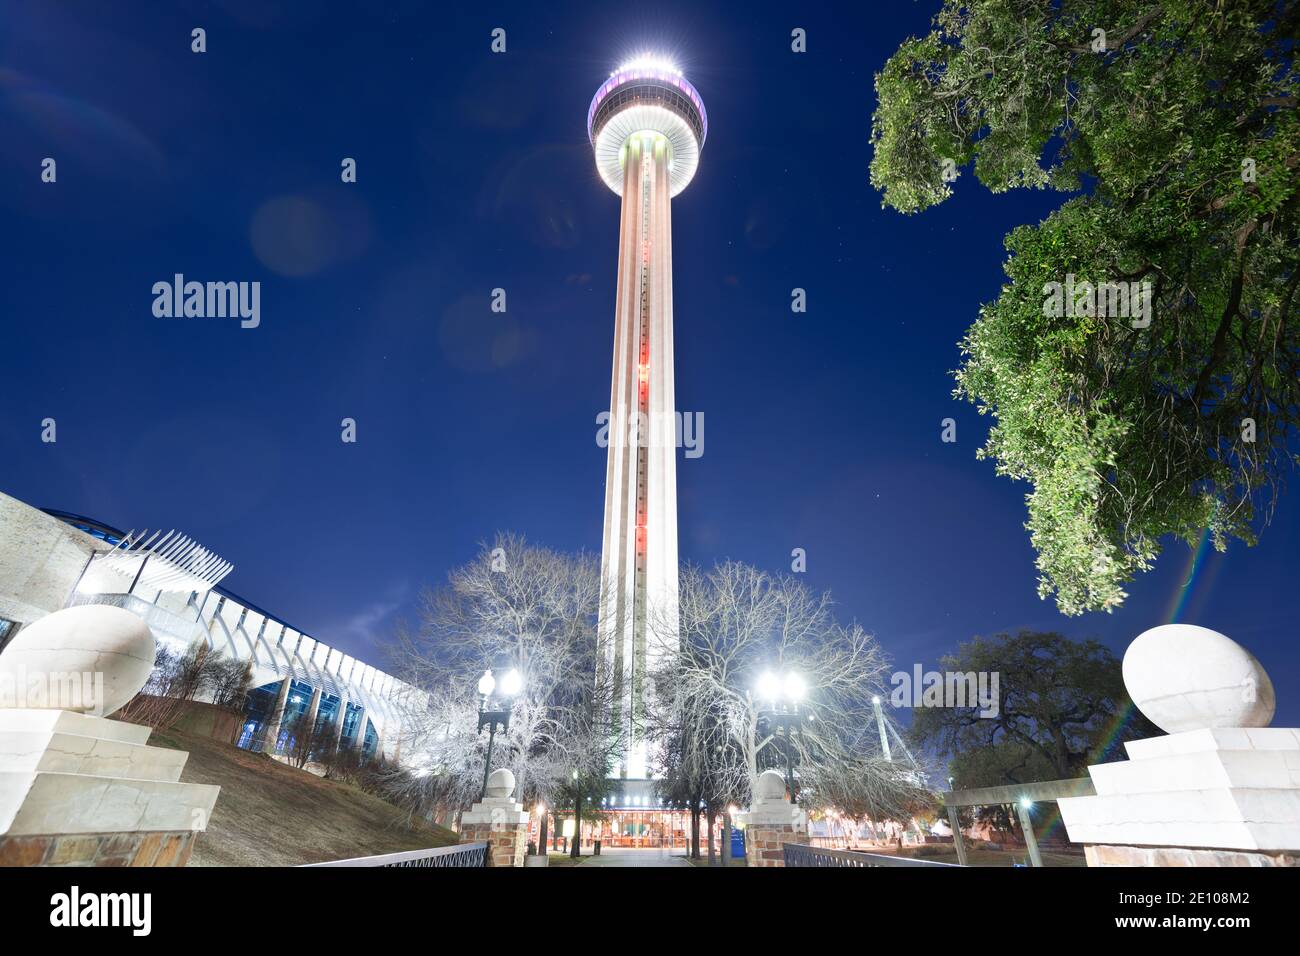 SAN ANTONIO, TEXAS - 31 DE ENERO de 2018: Torre de las Américas por la noche. La torre de observación de 750 metros (229 pies) fue inaugurada en 1968. Foto de stock